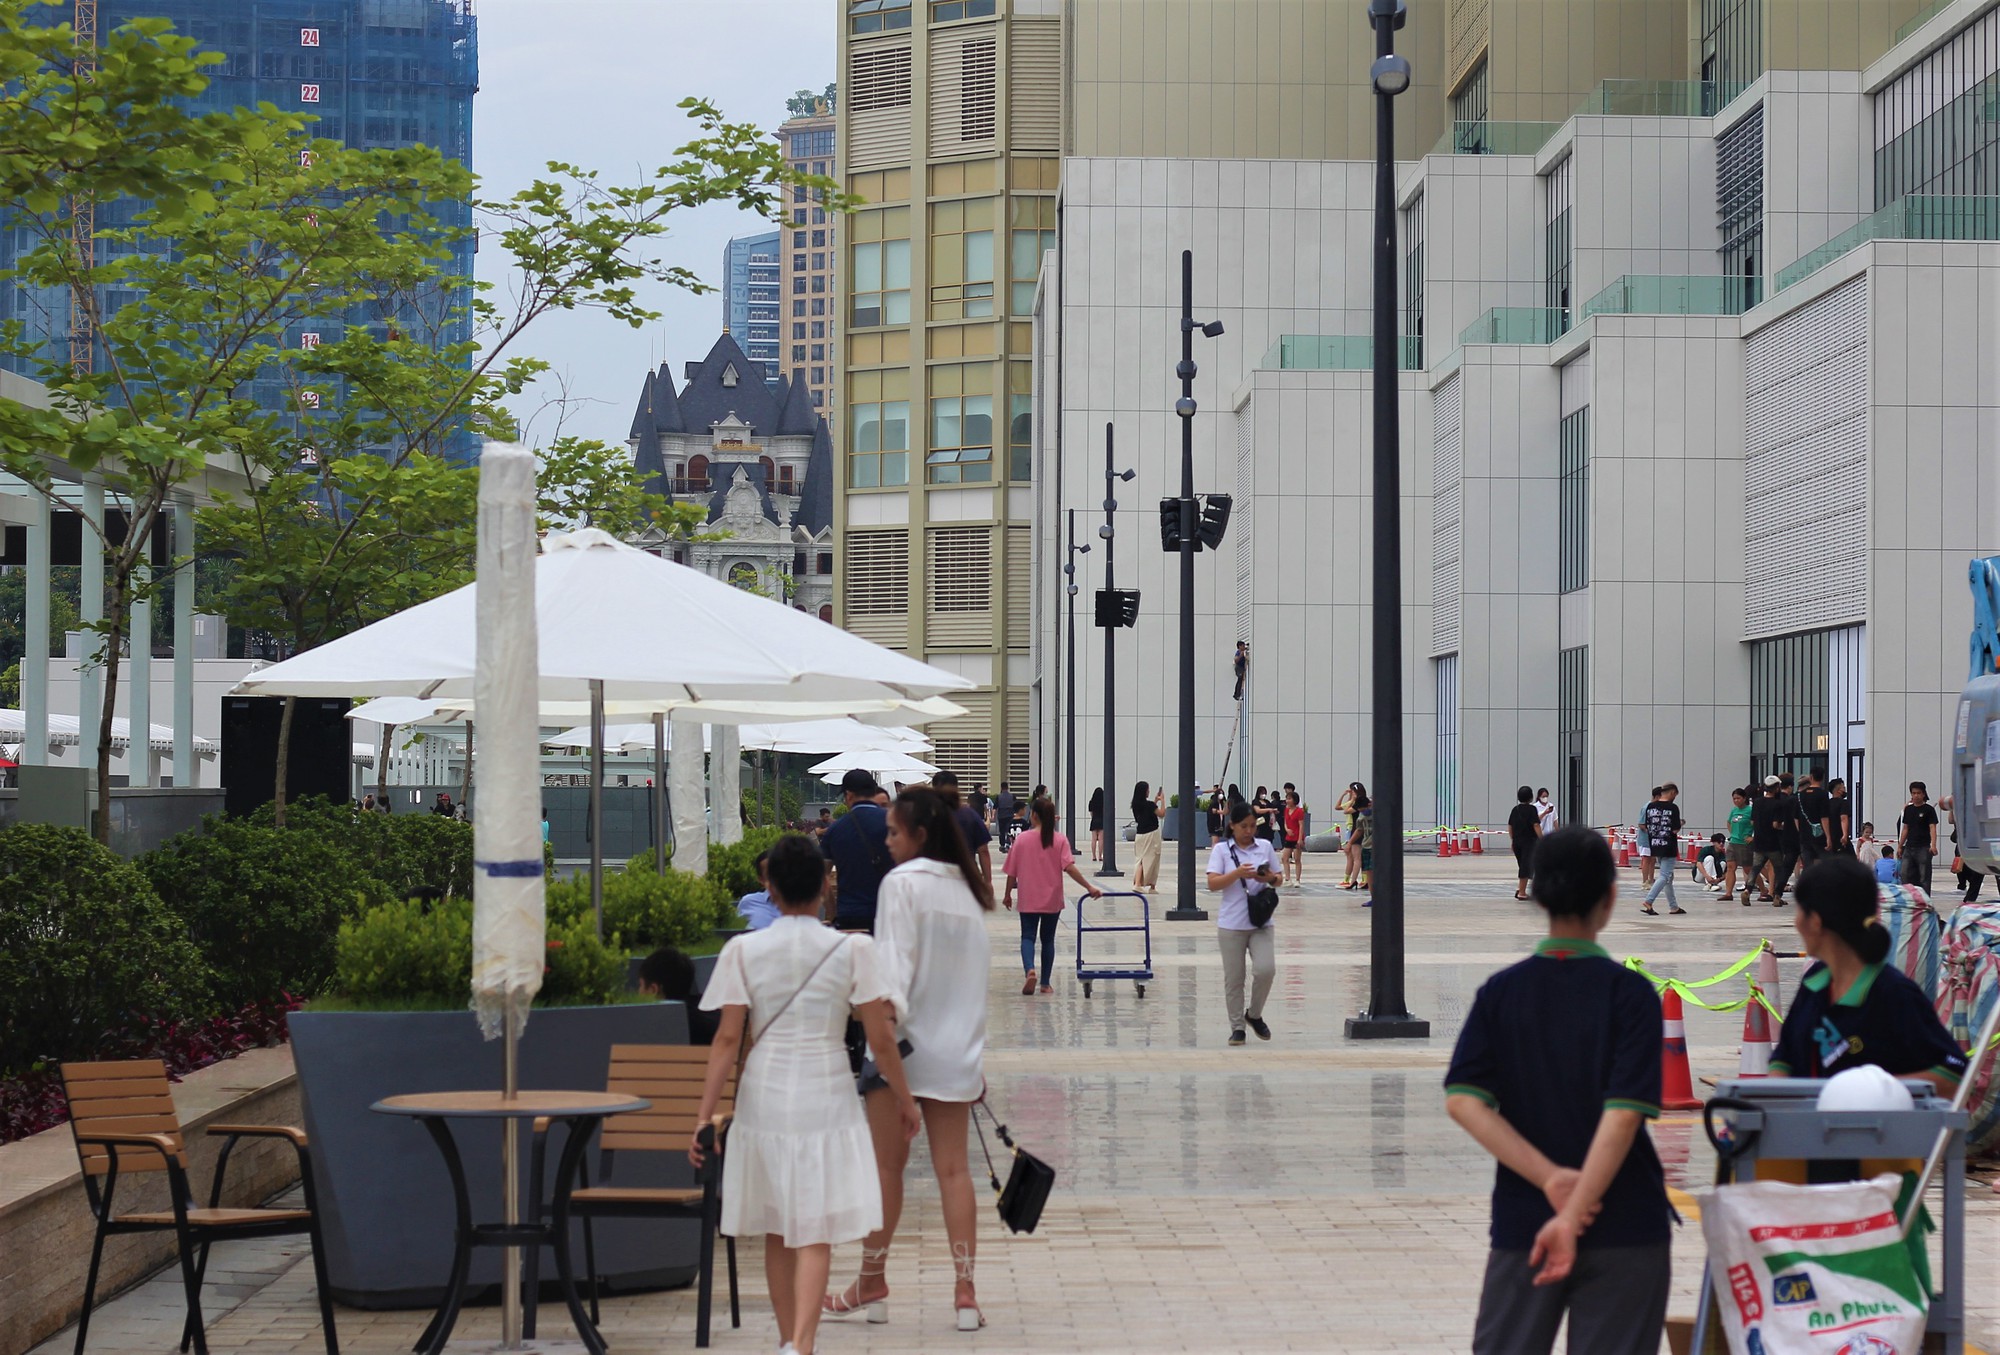 Chiêm ngưỡng trung tâm thương mại lớn nhất của Lotte tại Việt Nam - Ảnh 2.